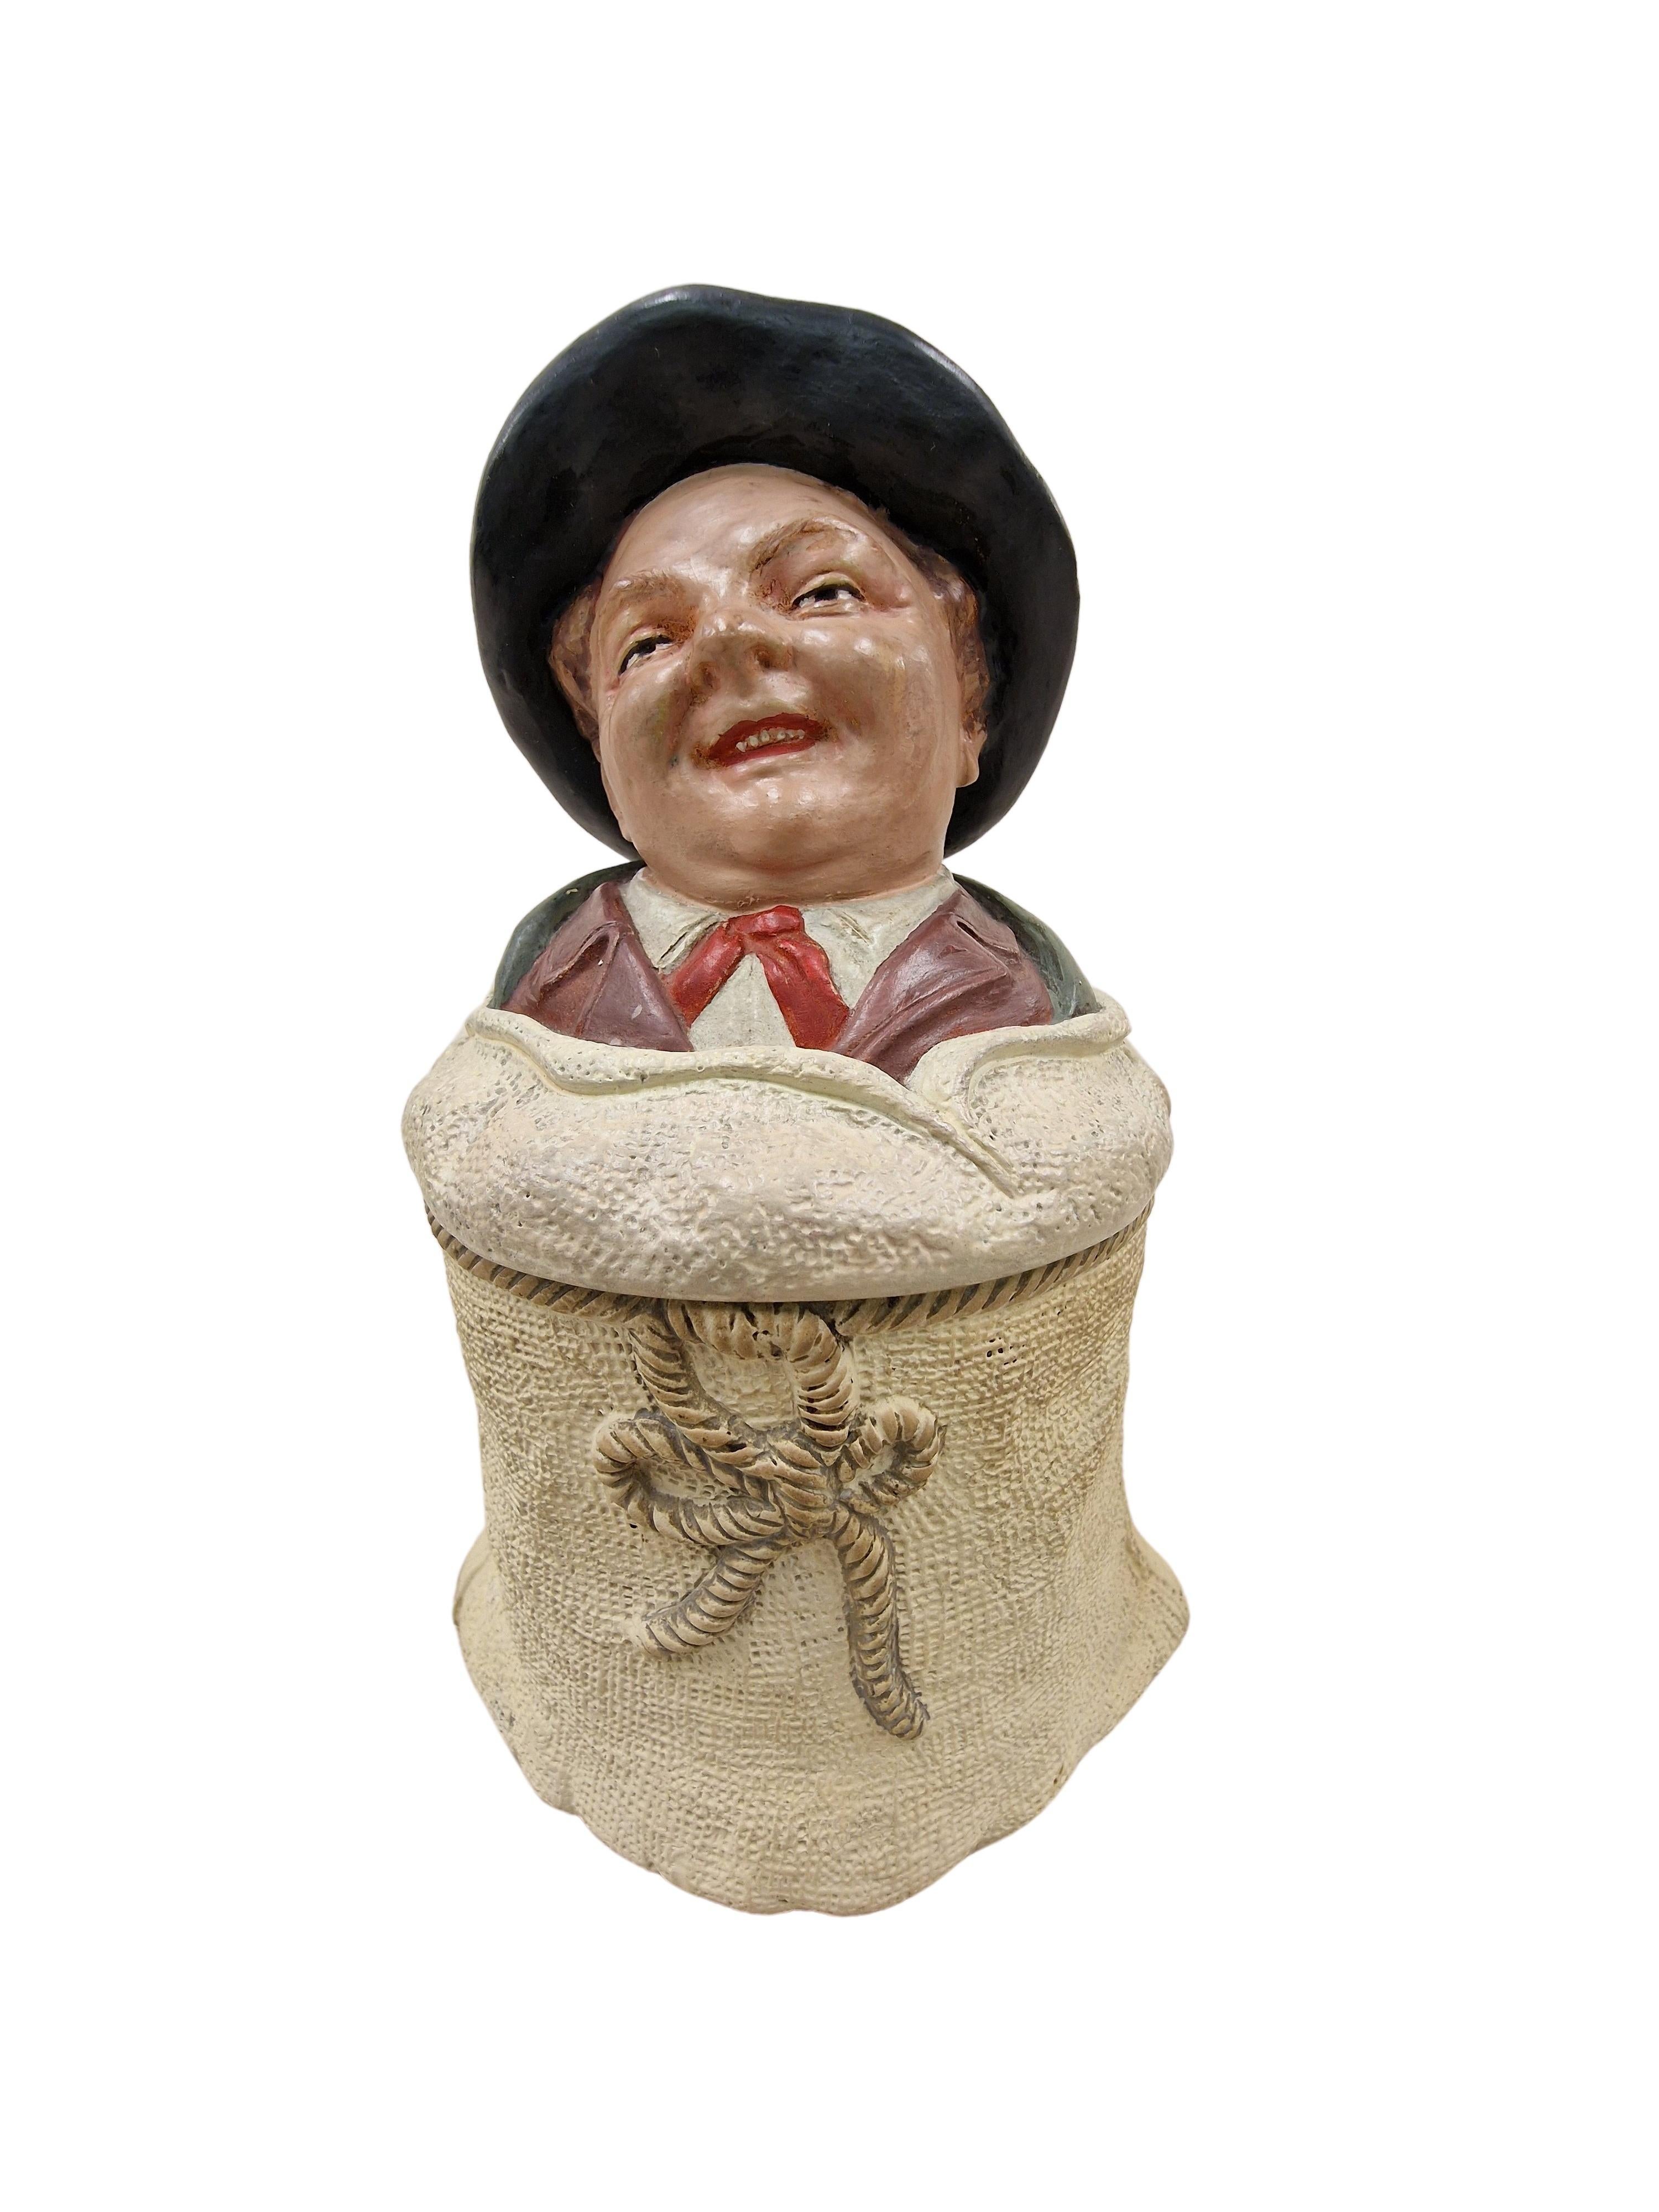 Außergewöhnliche, charmante Tabakdose aus den 1910er Jahren, ein Original-Jugendstilstück, hergestellt vom bekannten Johann Maresch, Tschechien. 

Die Tabakdose ist wie ein Leinensack gestaltet, der mit einer Schnur zusammengebunden ist. Oben - auf